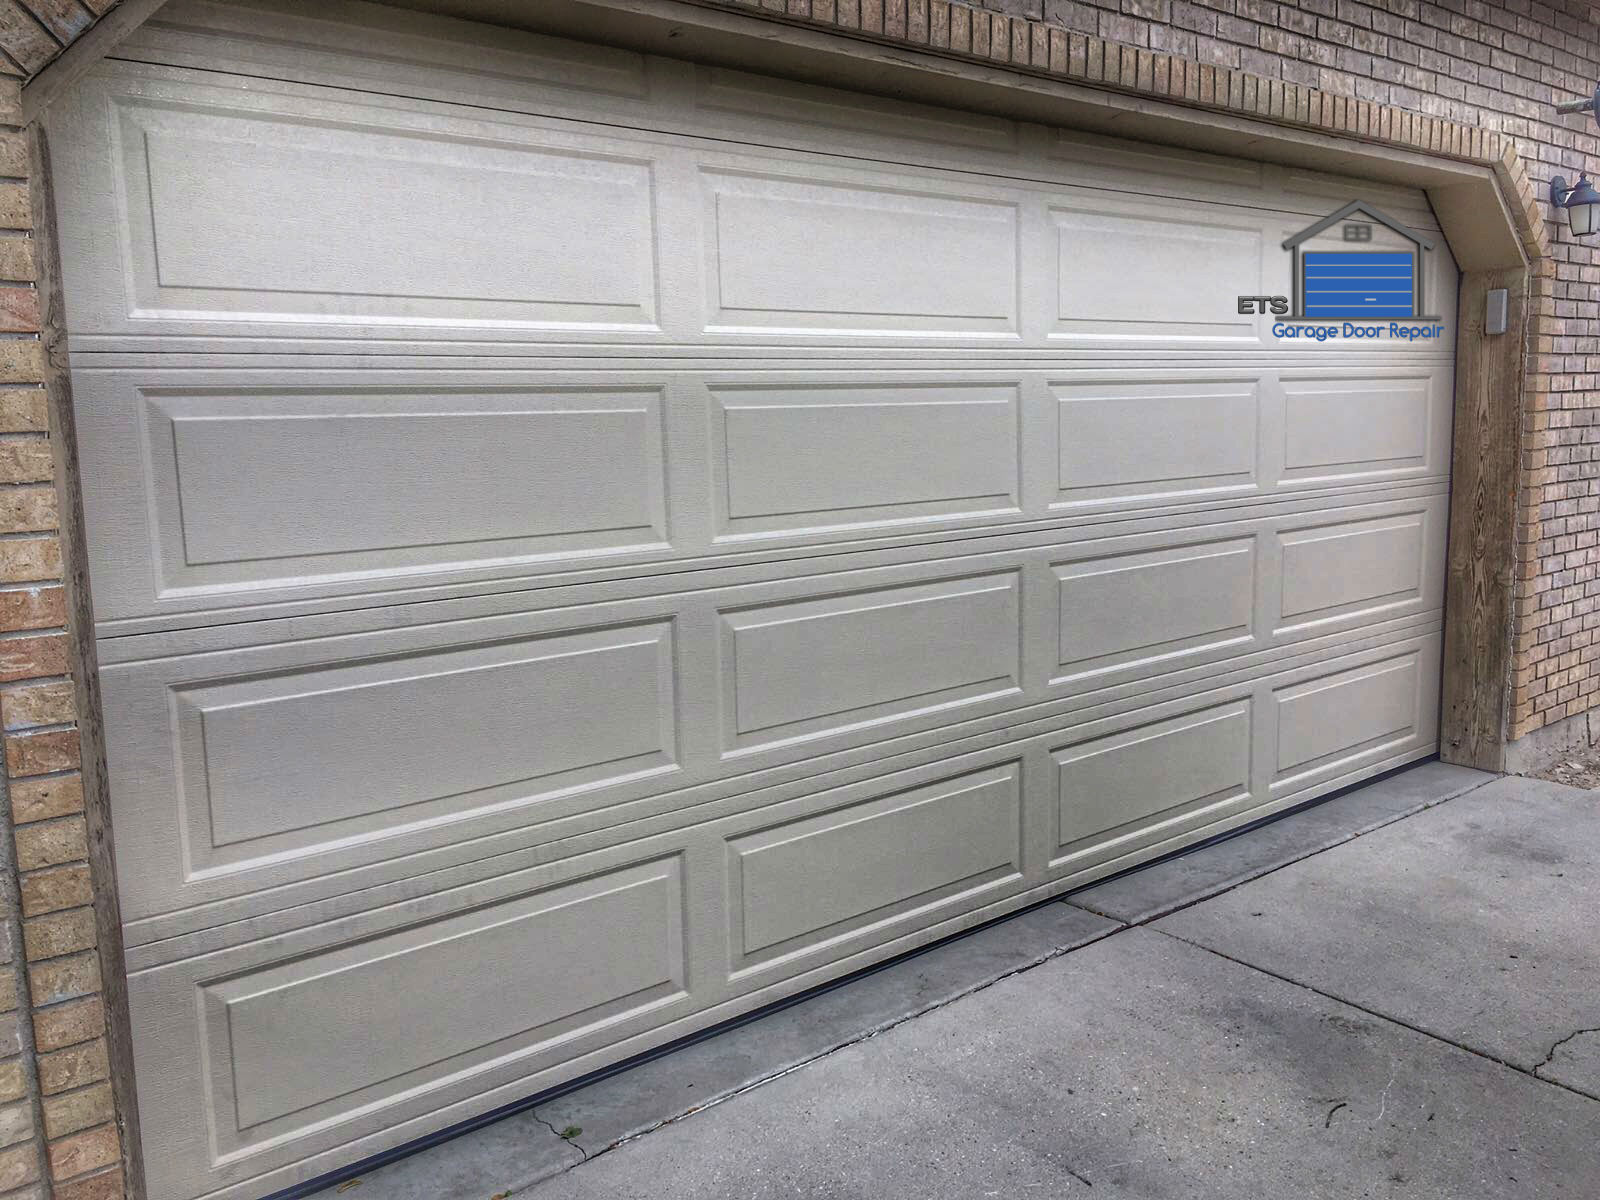 ETS Garage Door Repair Of West Linn Garage Door Repair & Installation Services3